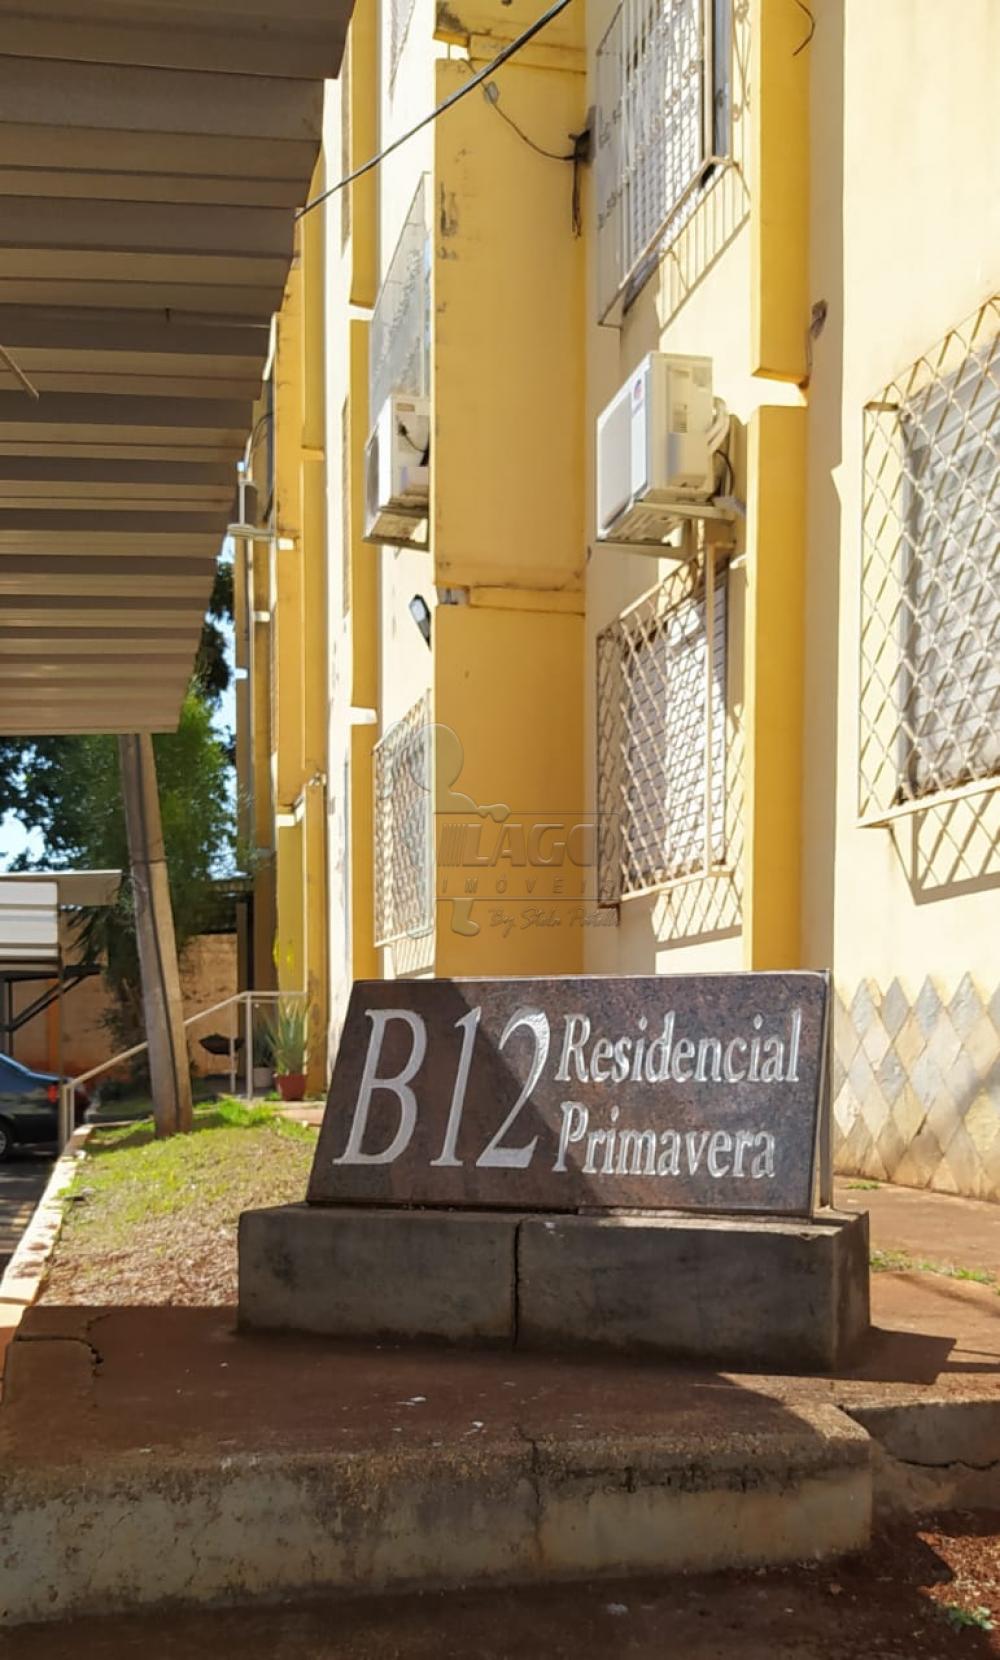 Comprar Apartamentos / Padrão em Ribeirão Preto R$ 250.000,00 - Foto 18